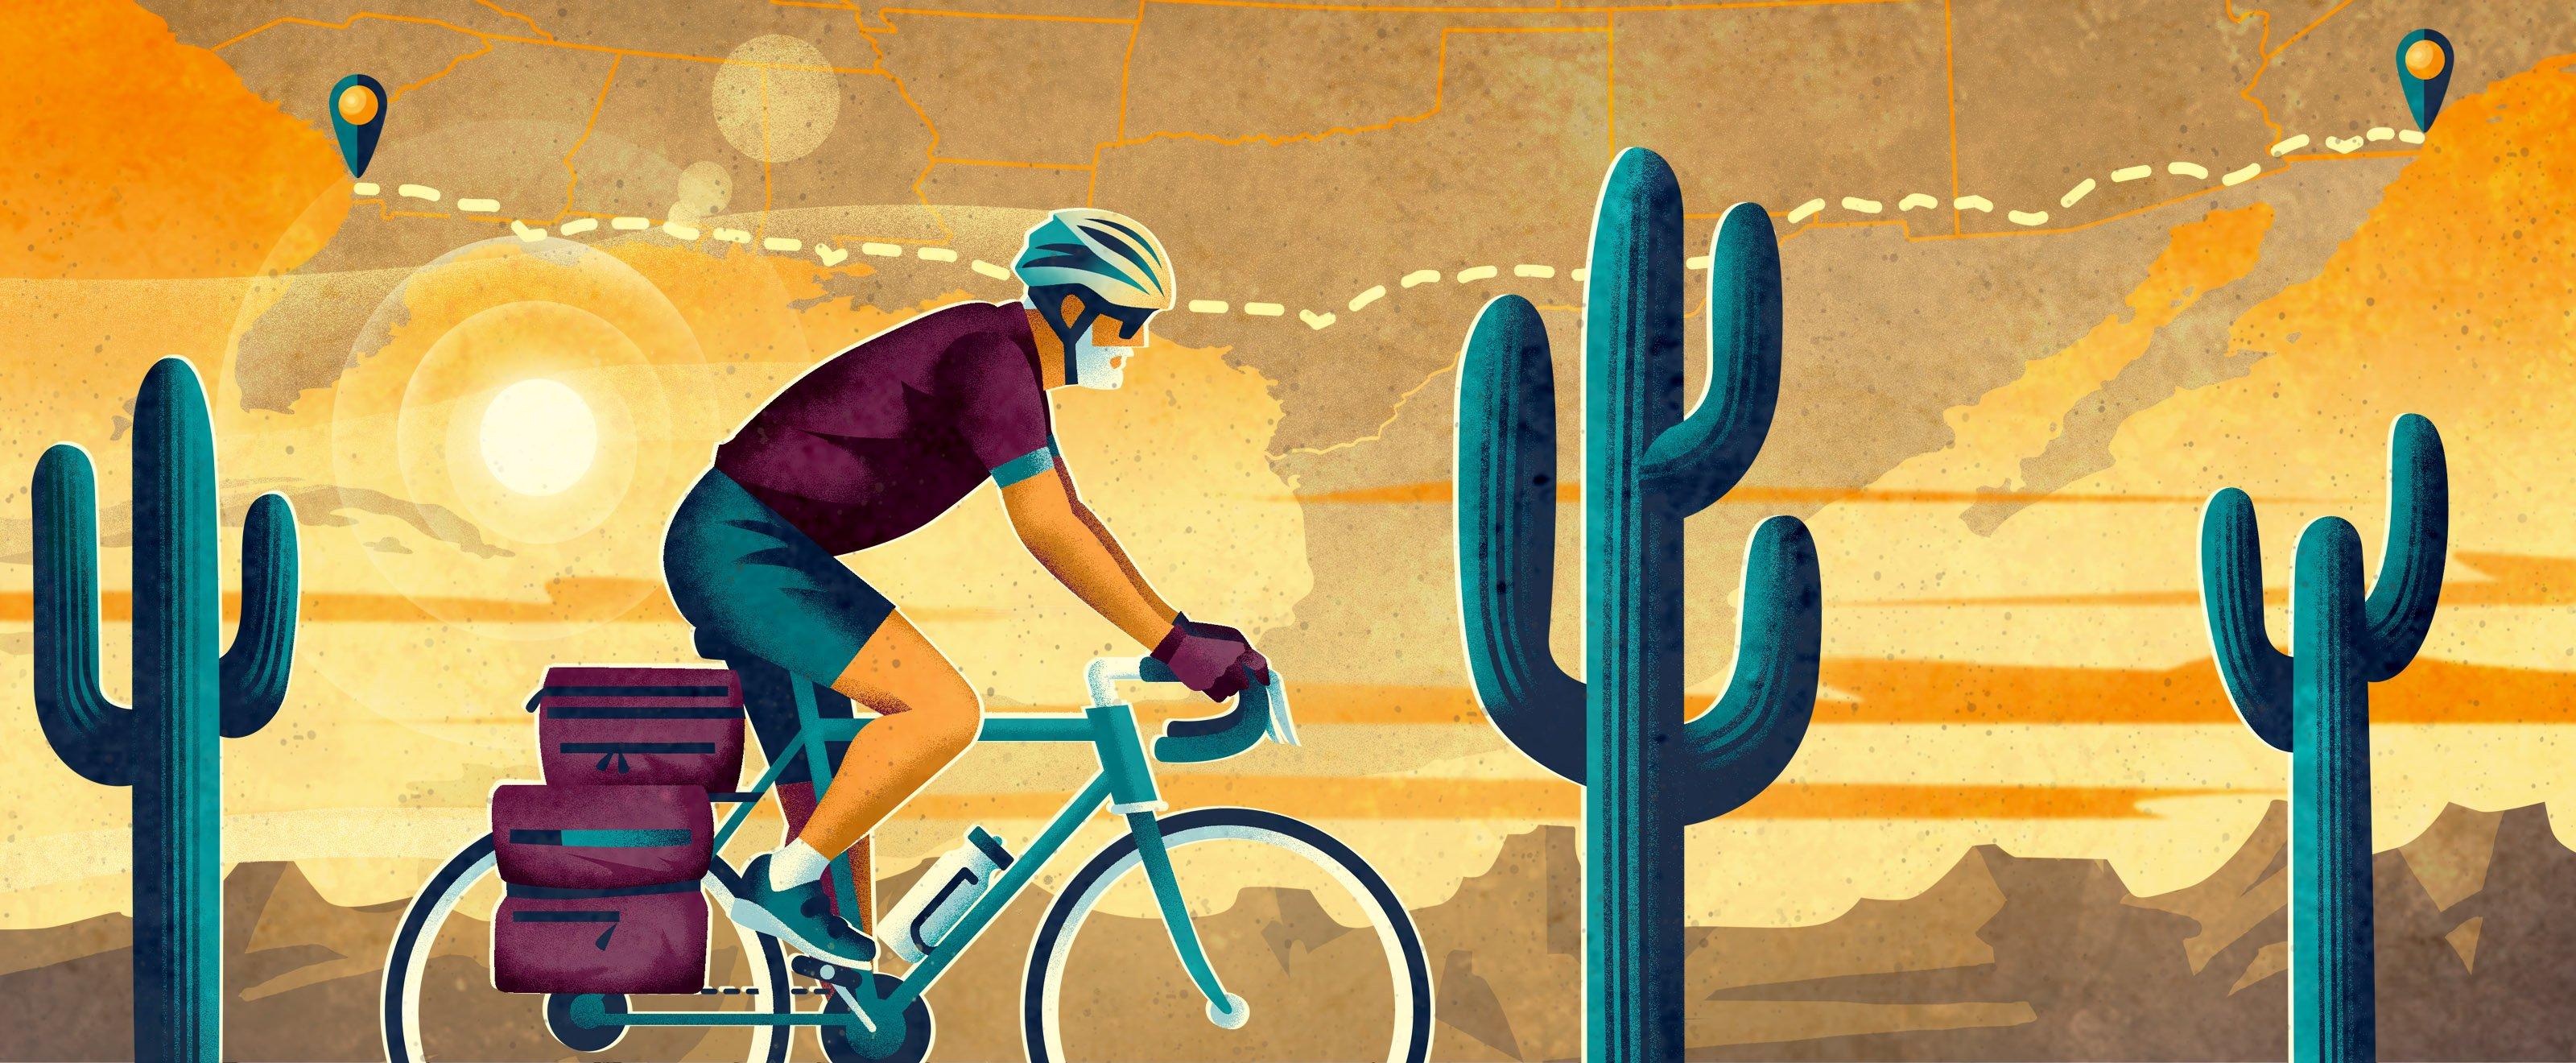 一个人骑着自行车穿过沙漠的插图